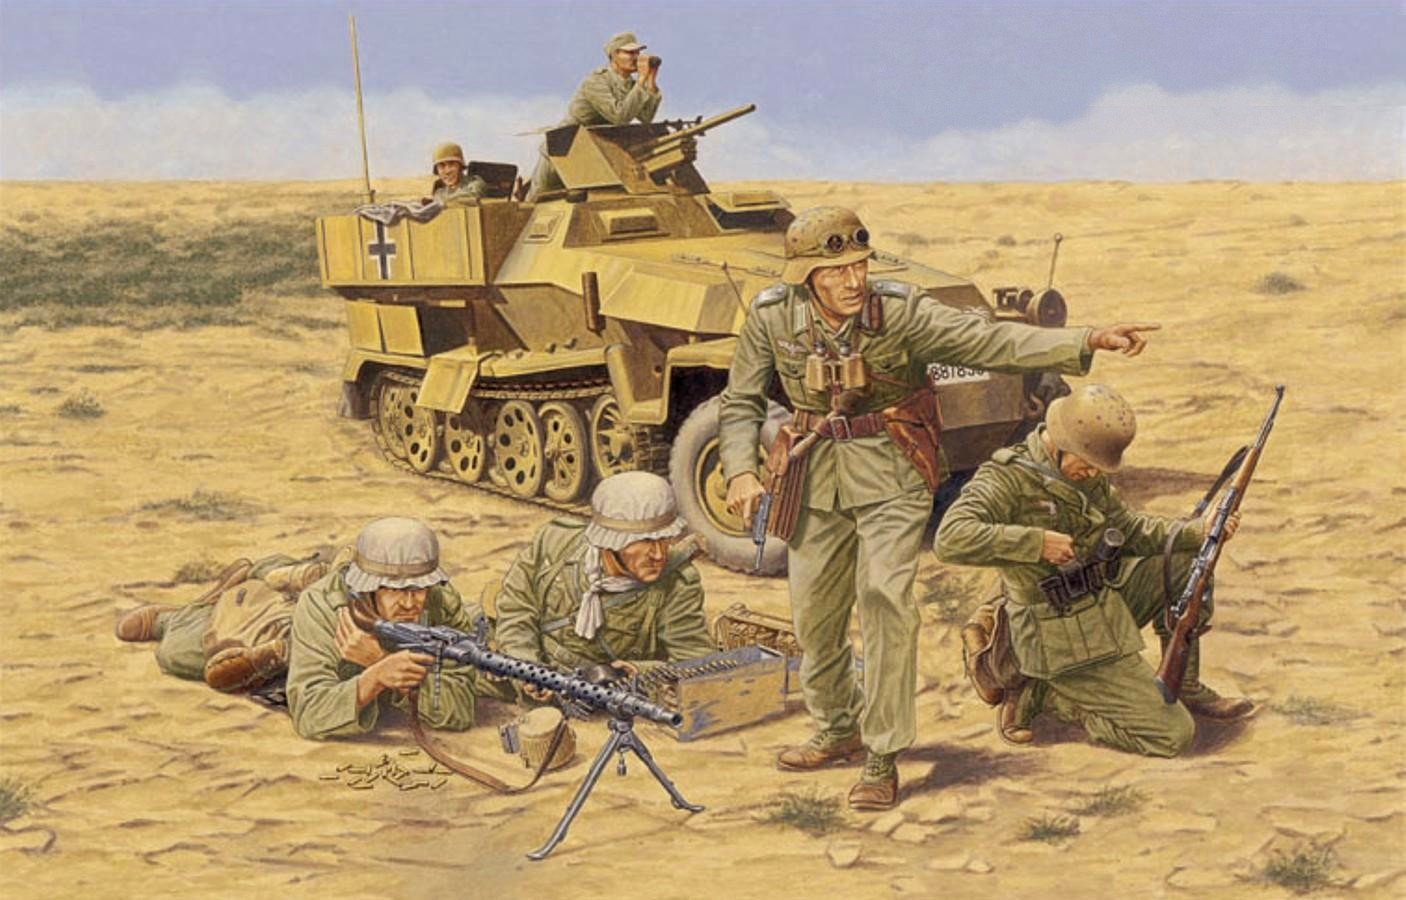 CELA S'ST PASSE. un  02 avril - Chroniques catelles - histoire - Afrika-Korps